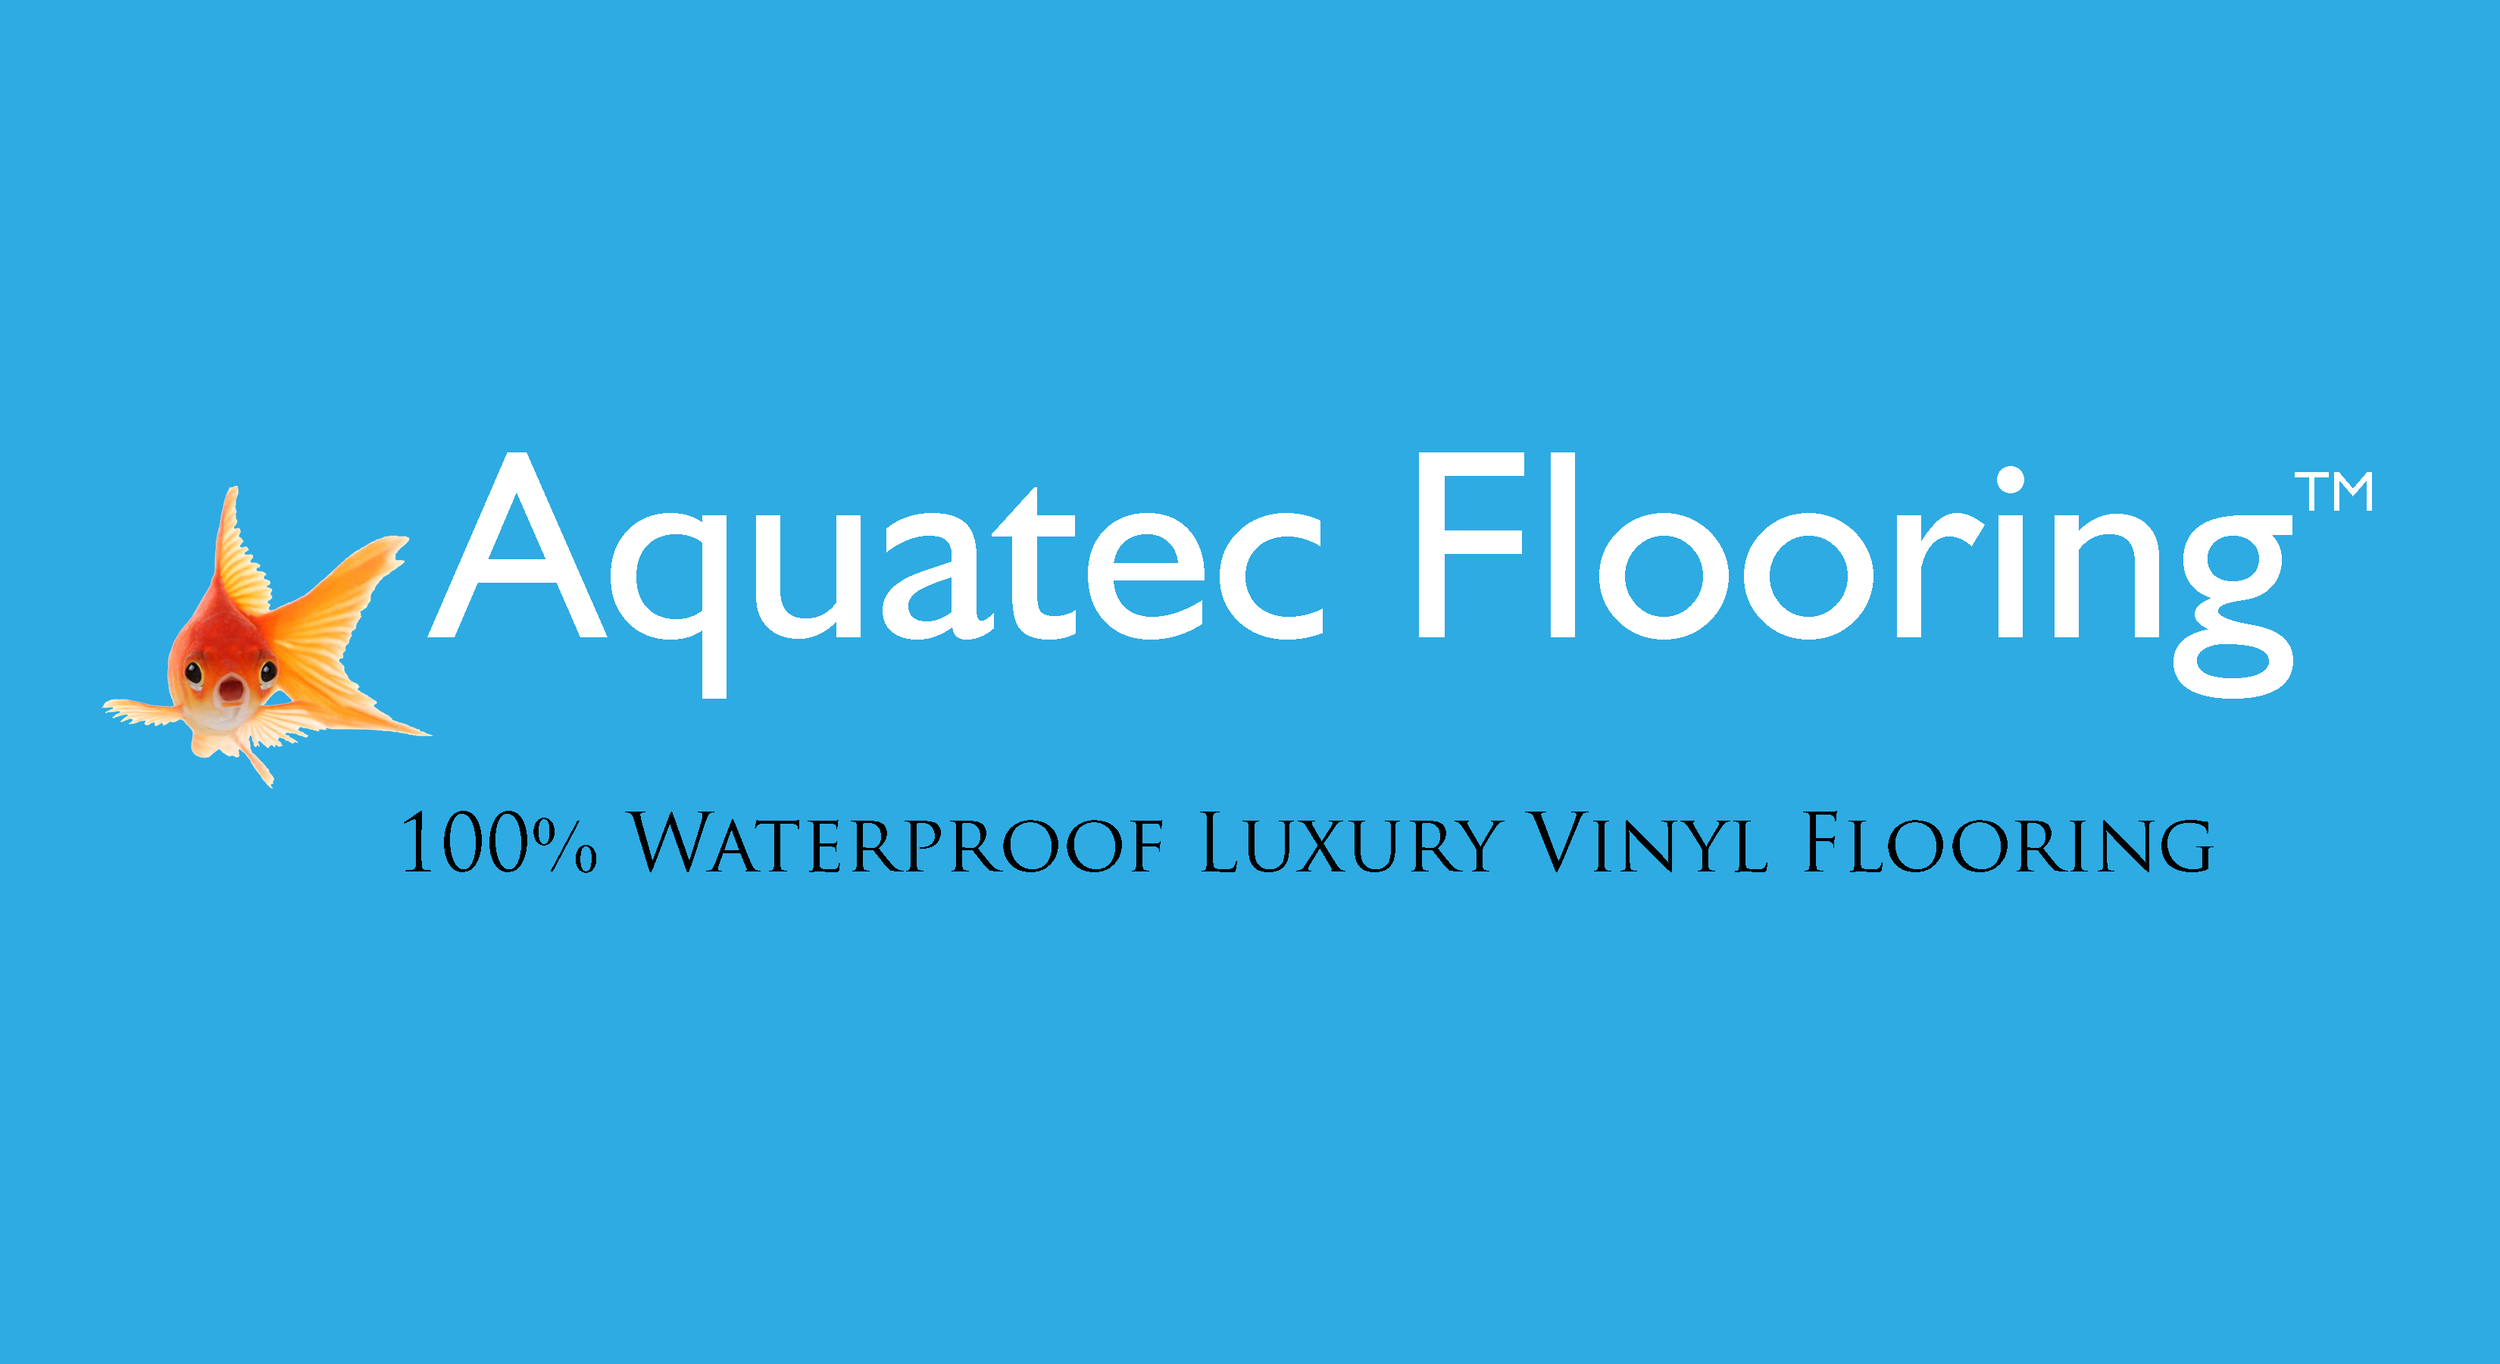 100% Waterproof LVT Flooring